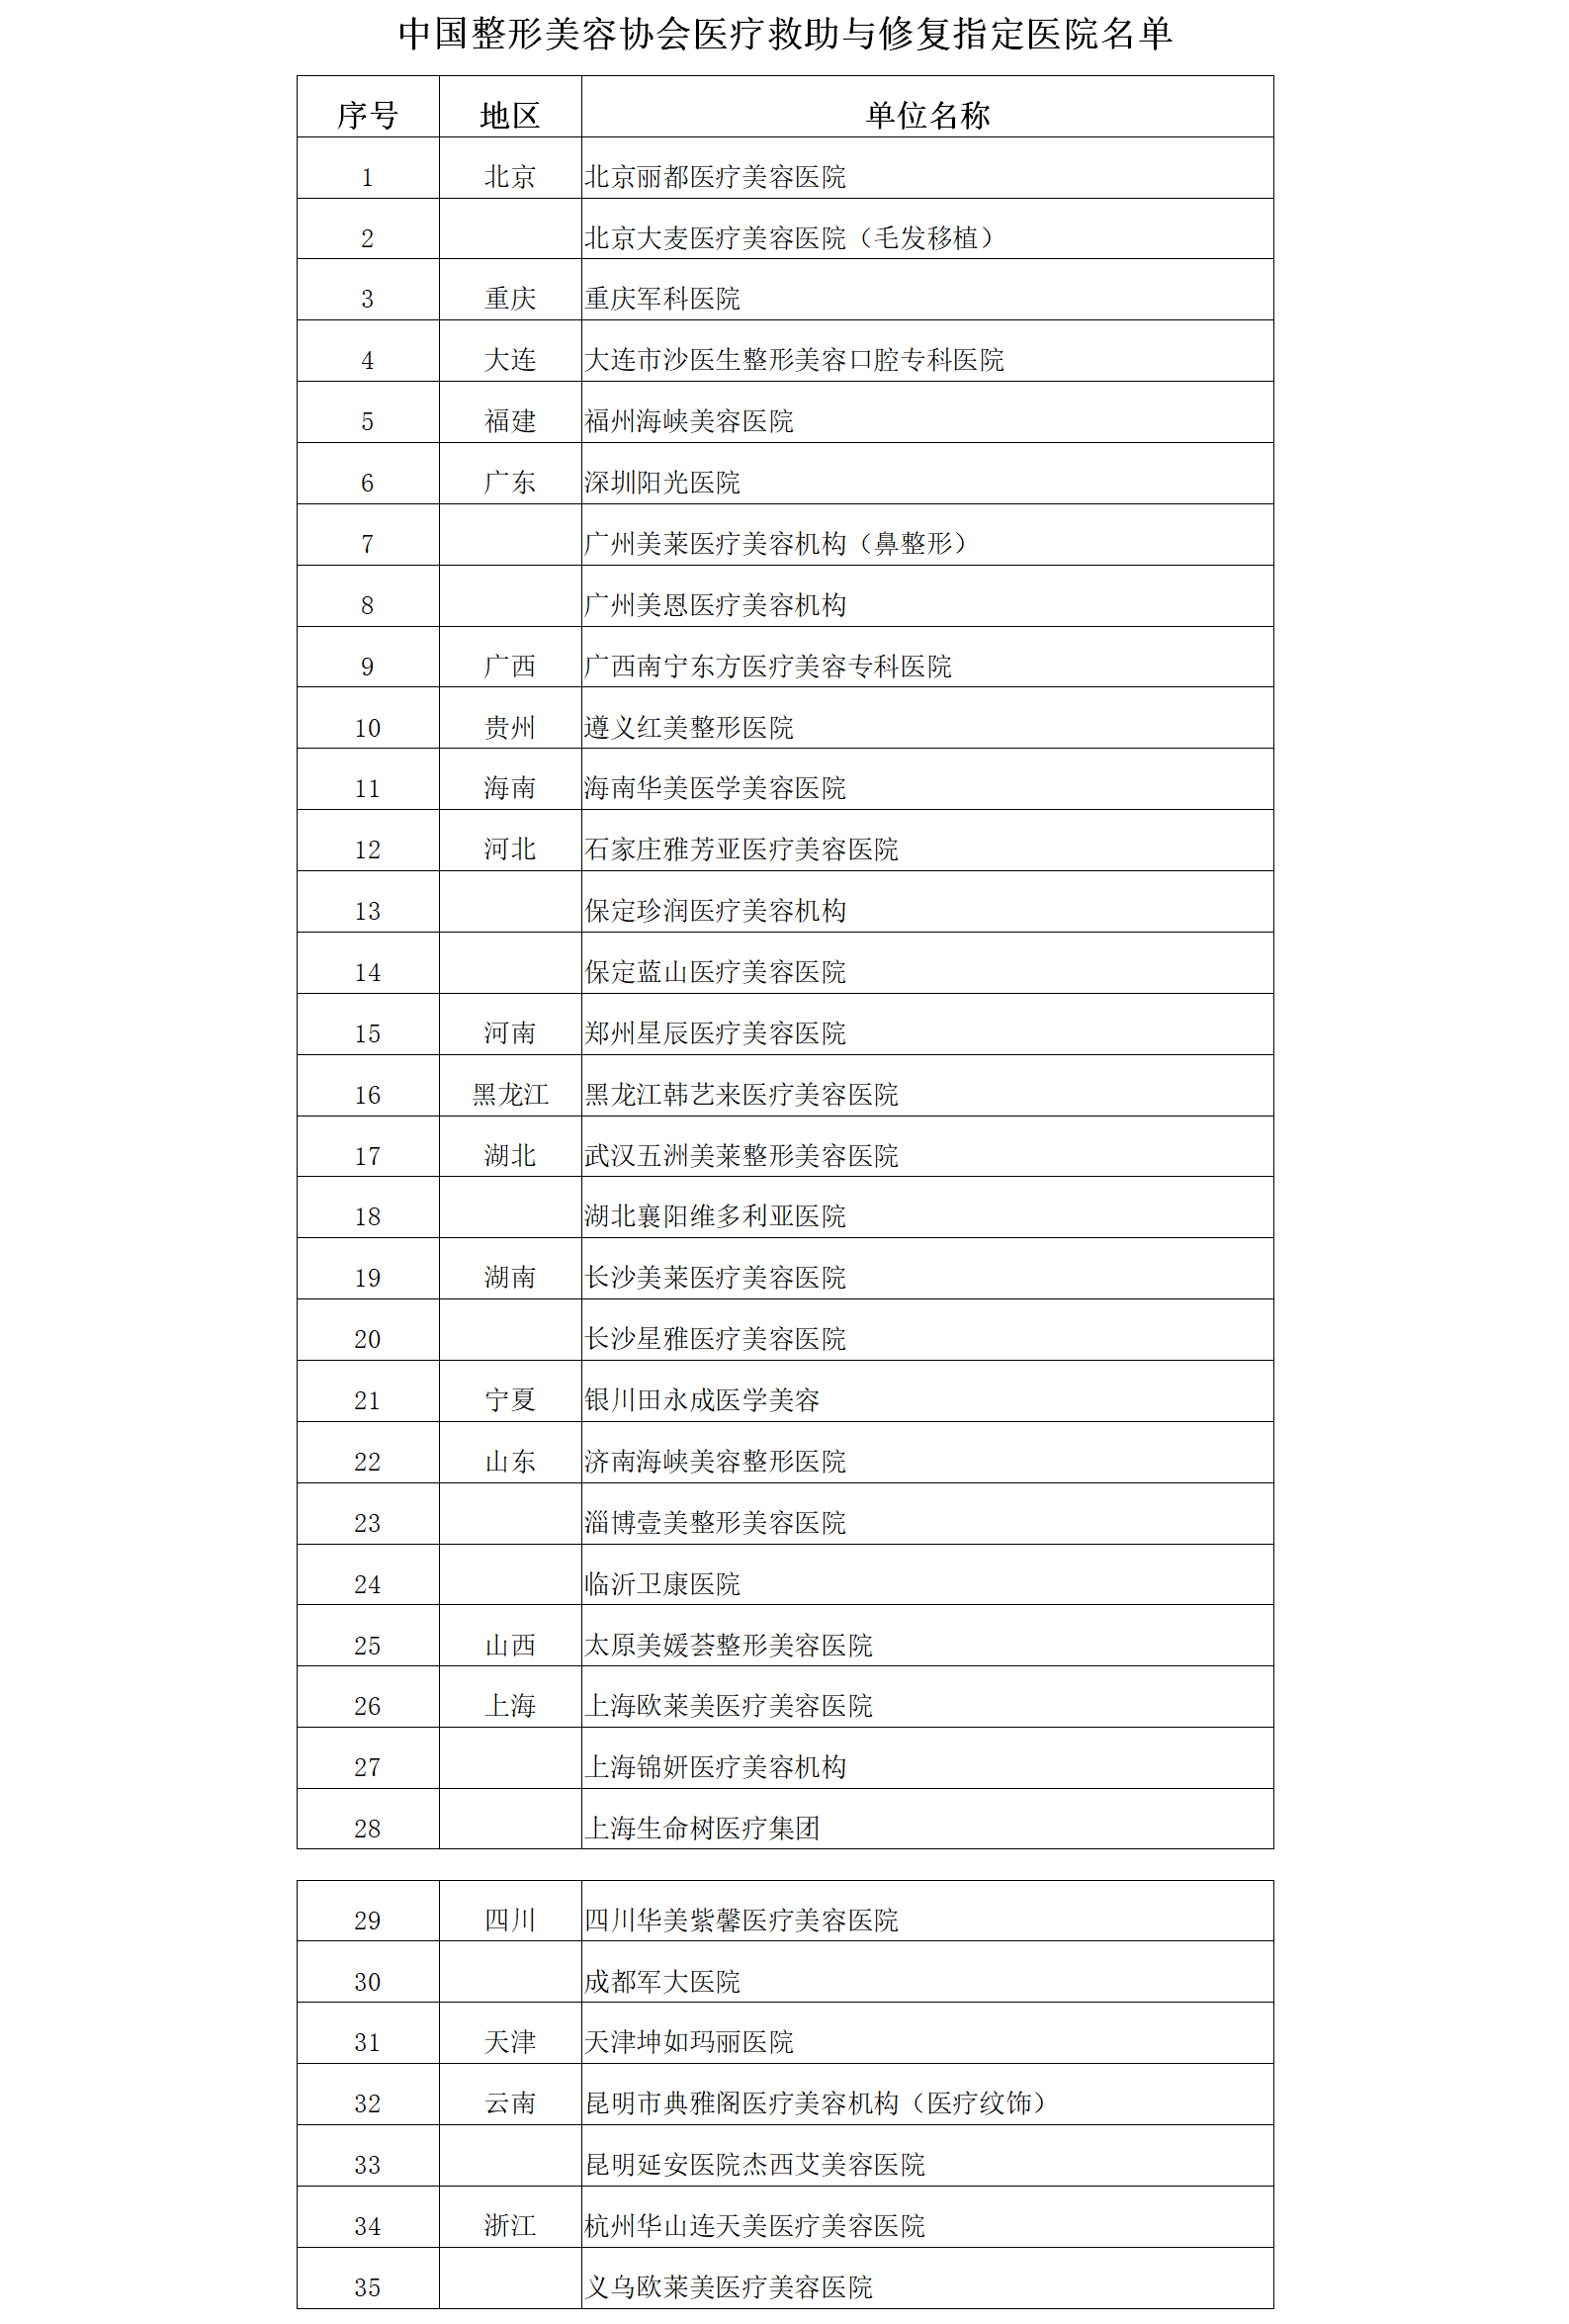 中国整形美容协会医疗救助与修复指定医院名单.png